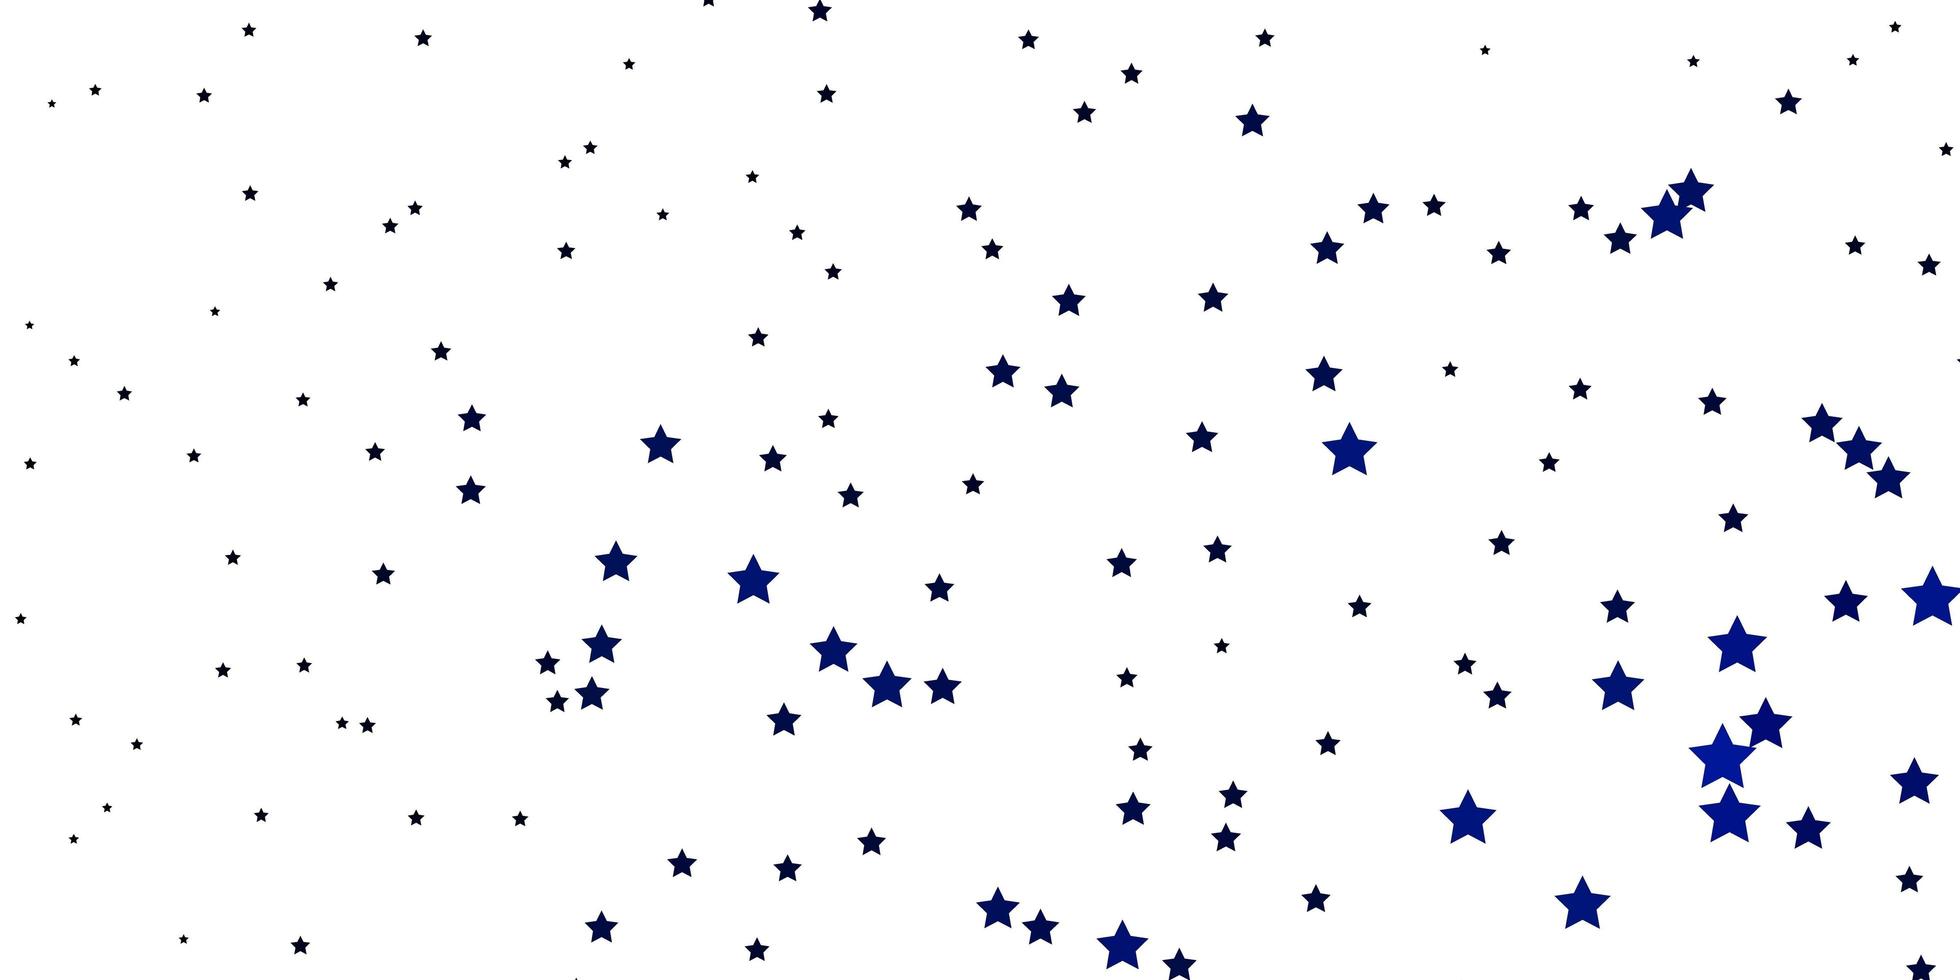 fond de vecteur bleu foncé avec des étoiles colorées.